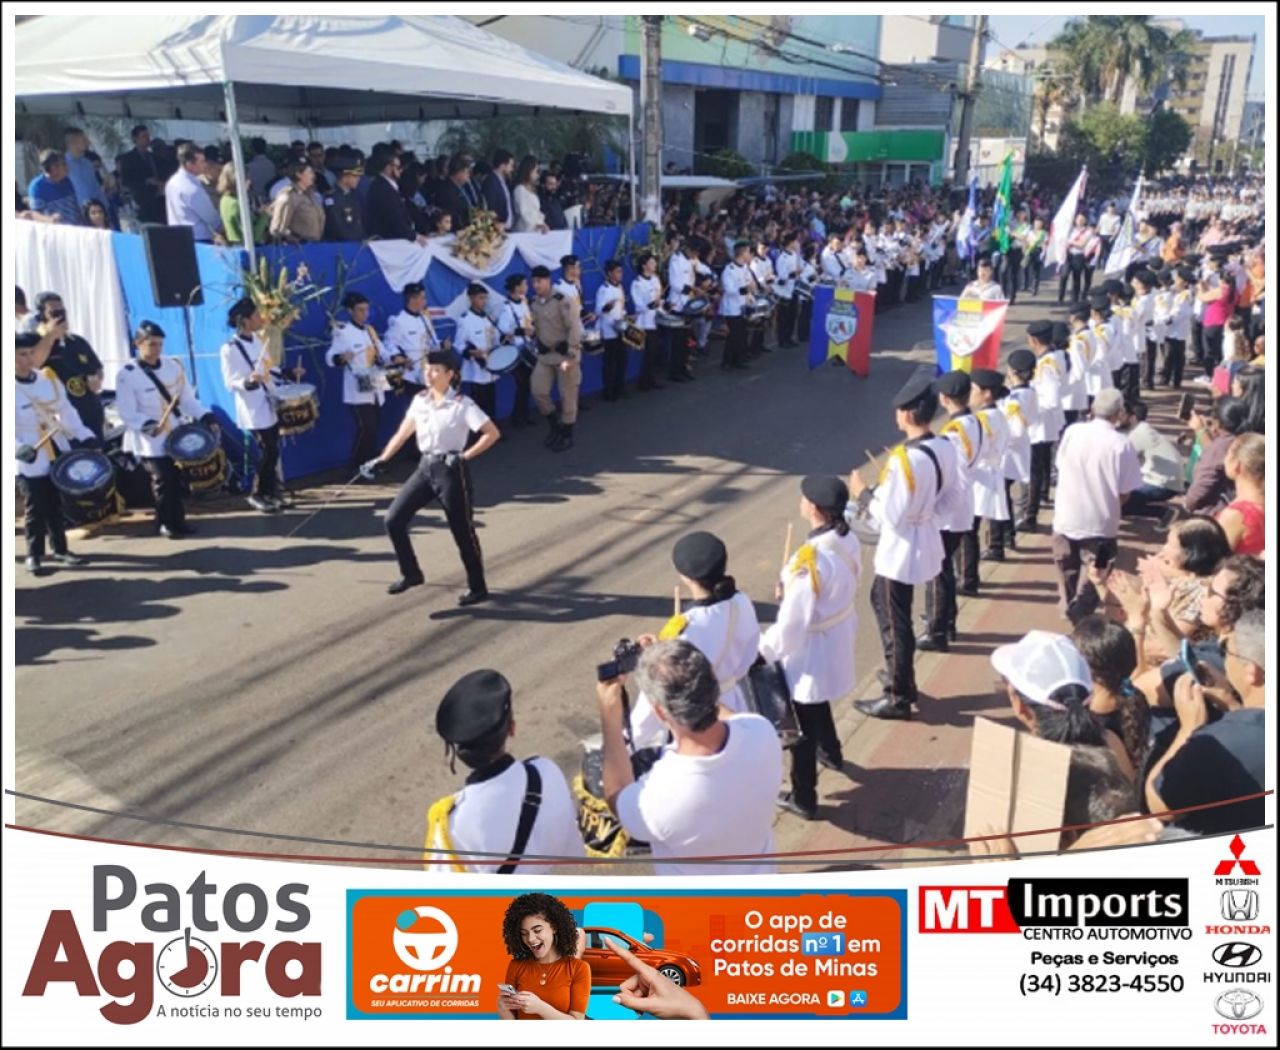 Patos de Minas Celebra 132 anos com tradicional desfile cívico/militar